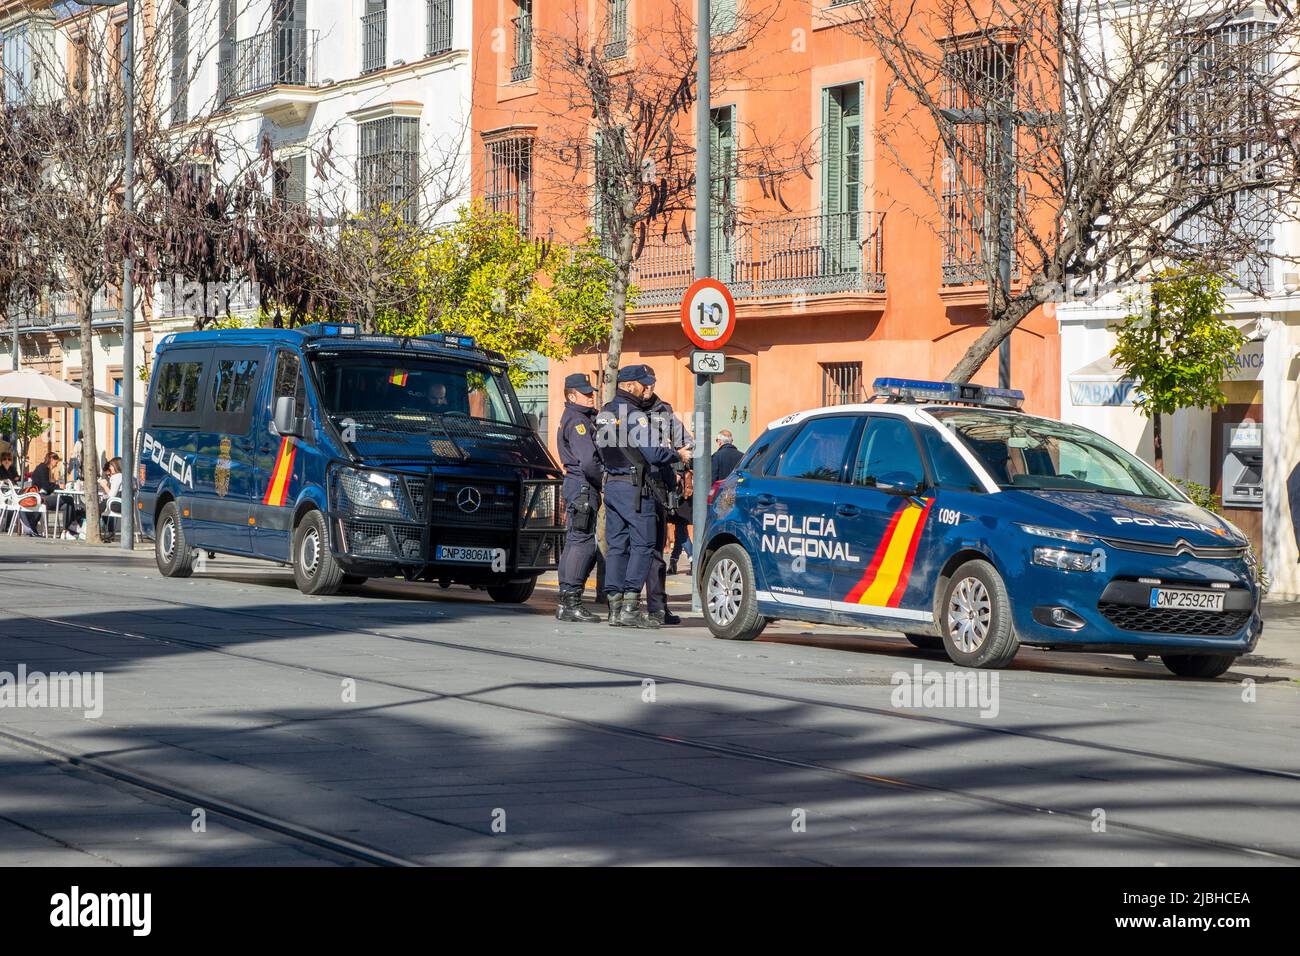 Officiers de police nationaux espagnols, voiture de police et fourgonnette de police dans le centre-ville de Séville Espagne, Policia Nacional Espagne Banque D'Images